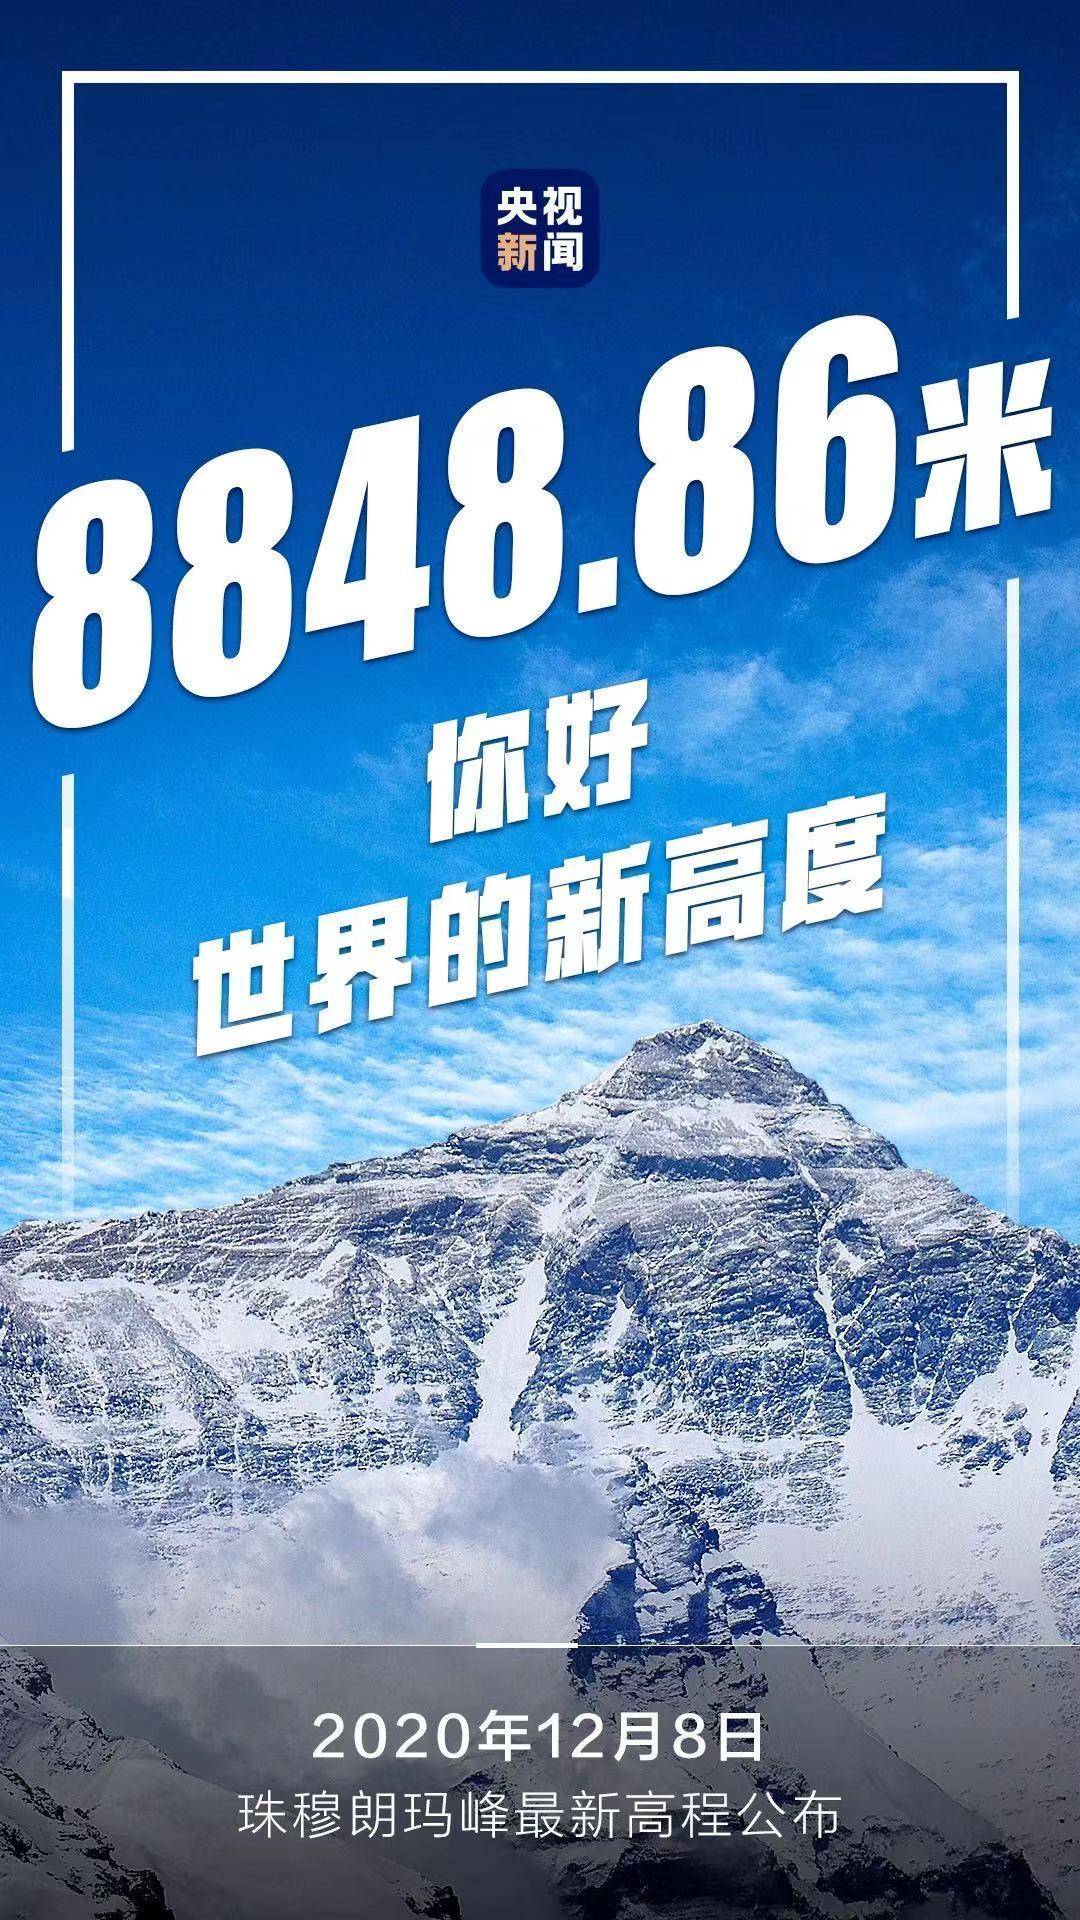 珠穆朗玛峰新高度88488645年长高73厘米未来仍会长高